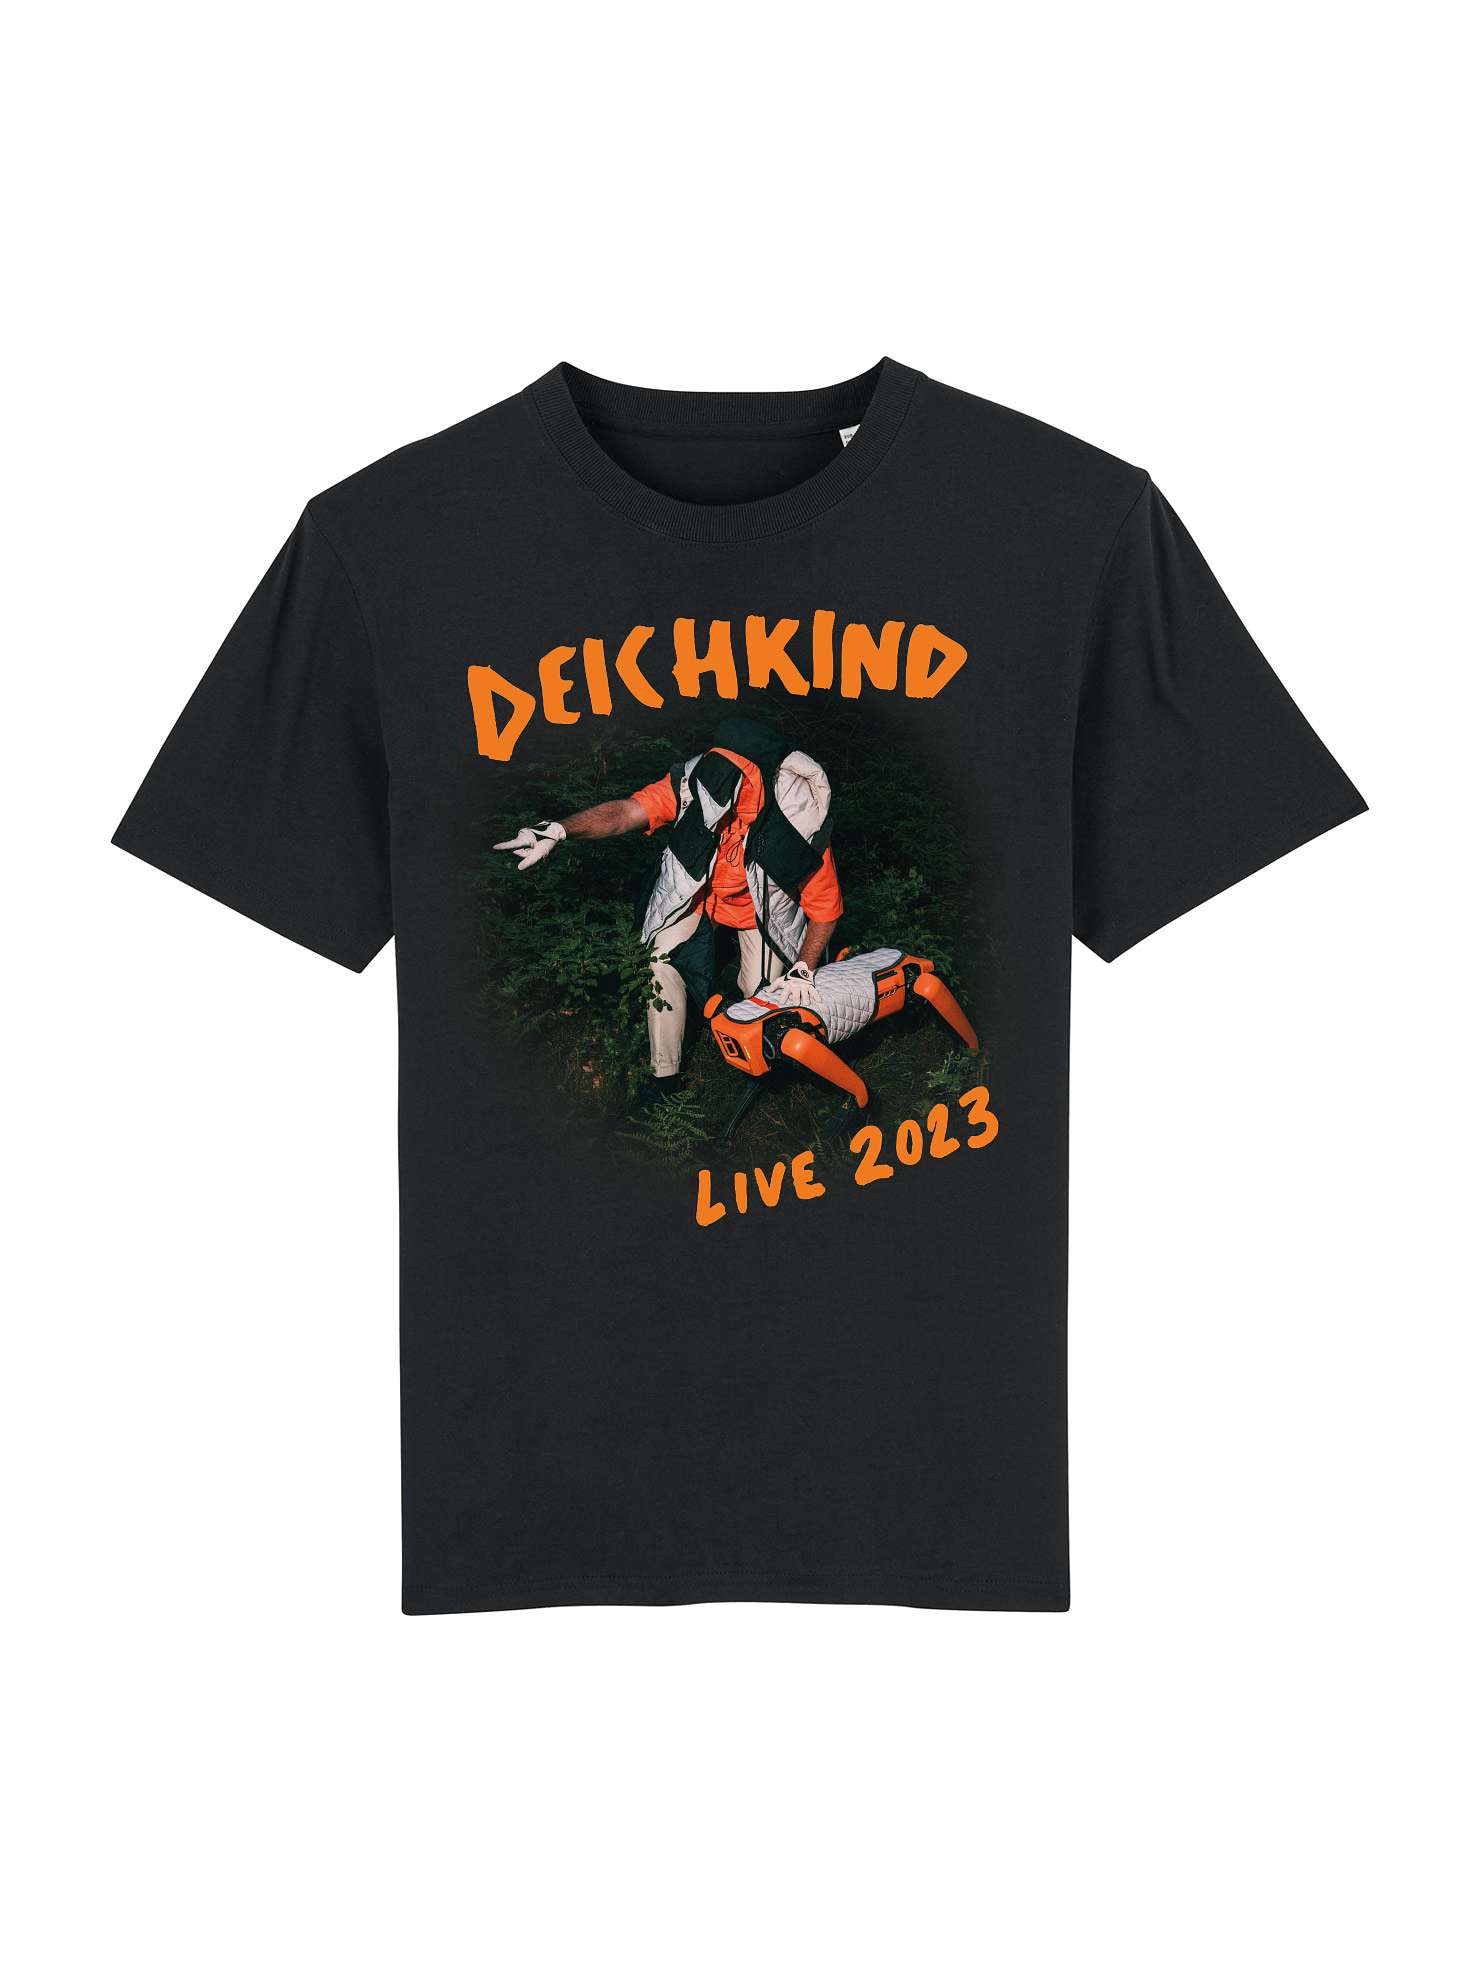 DEICHKIND - T-Shirt - Neues Vom Dauerzustand Tour - Schwarz